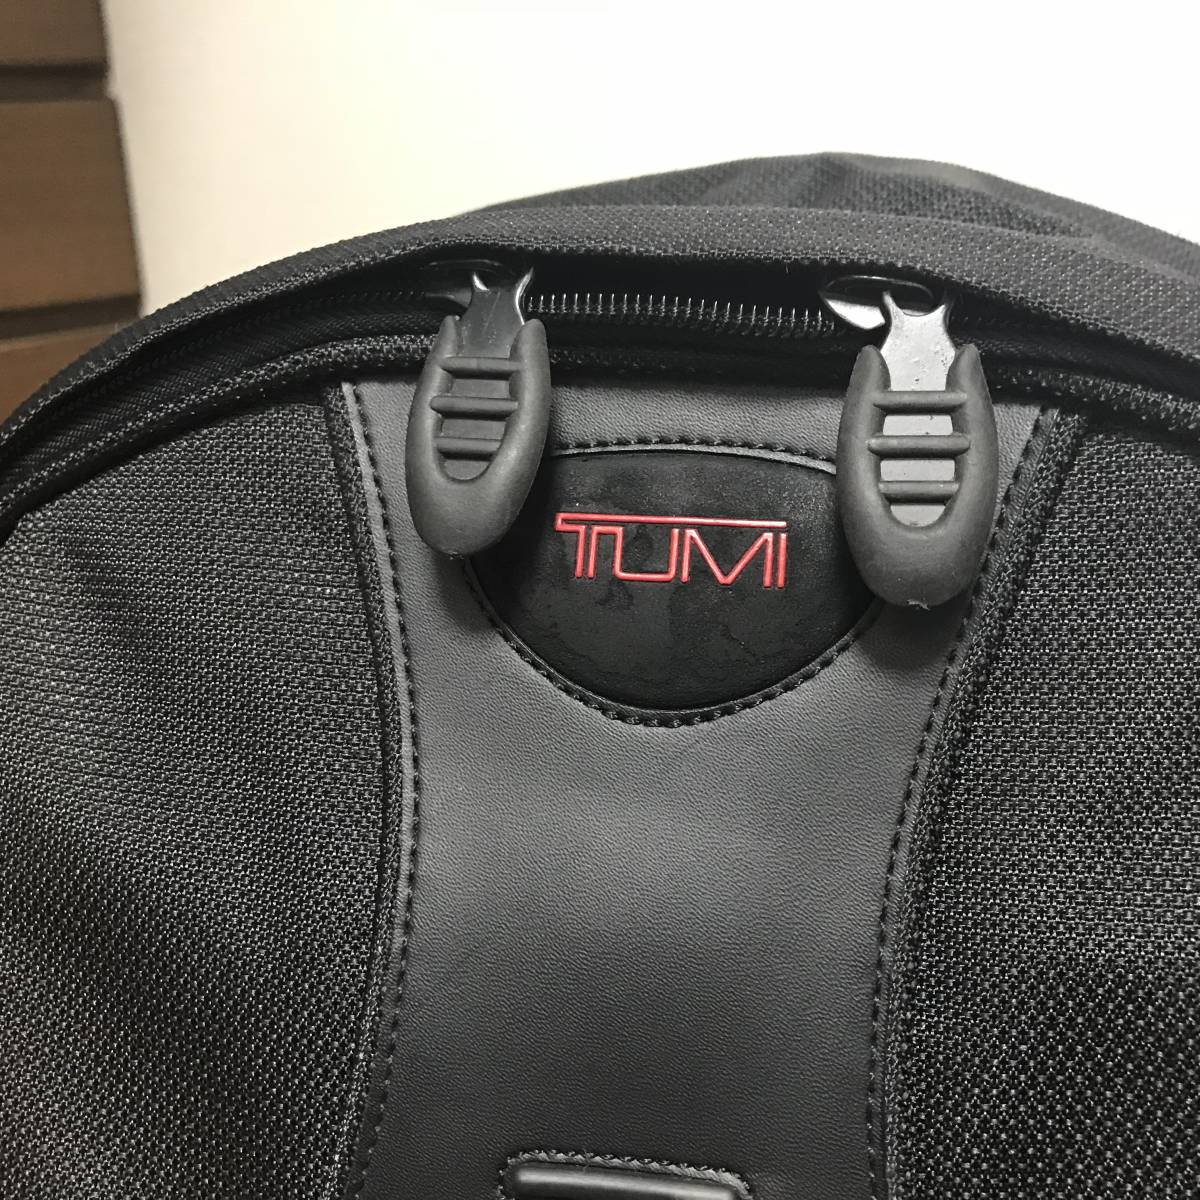 TUMI T-2背包很漂亮。 原文:ＴＵＭＩ　Ｔ-２　リュックサック　綺麗です。